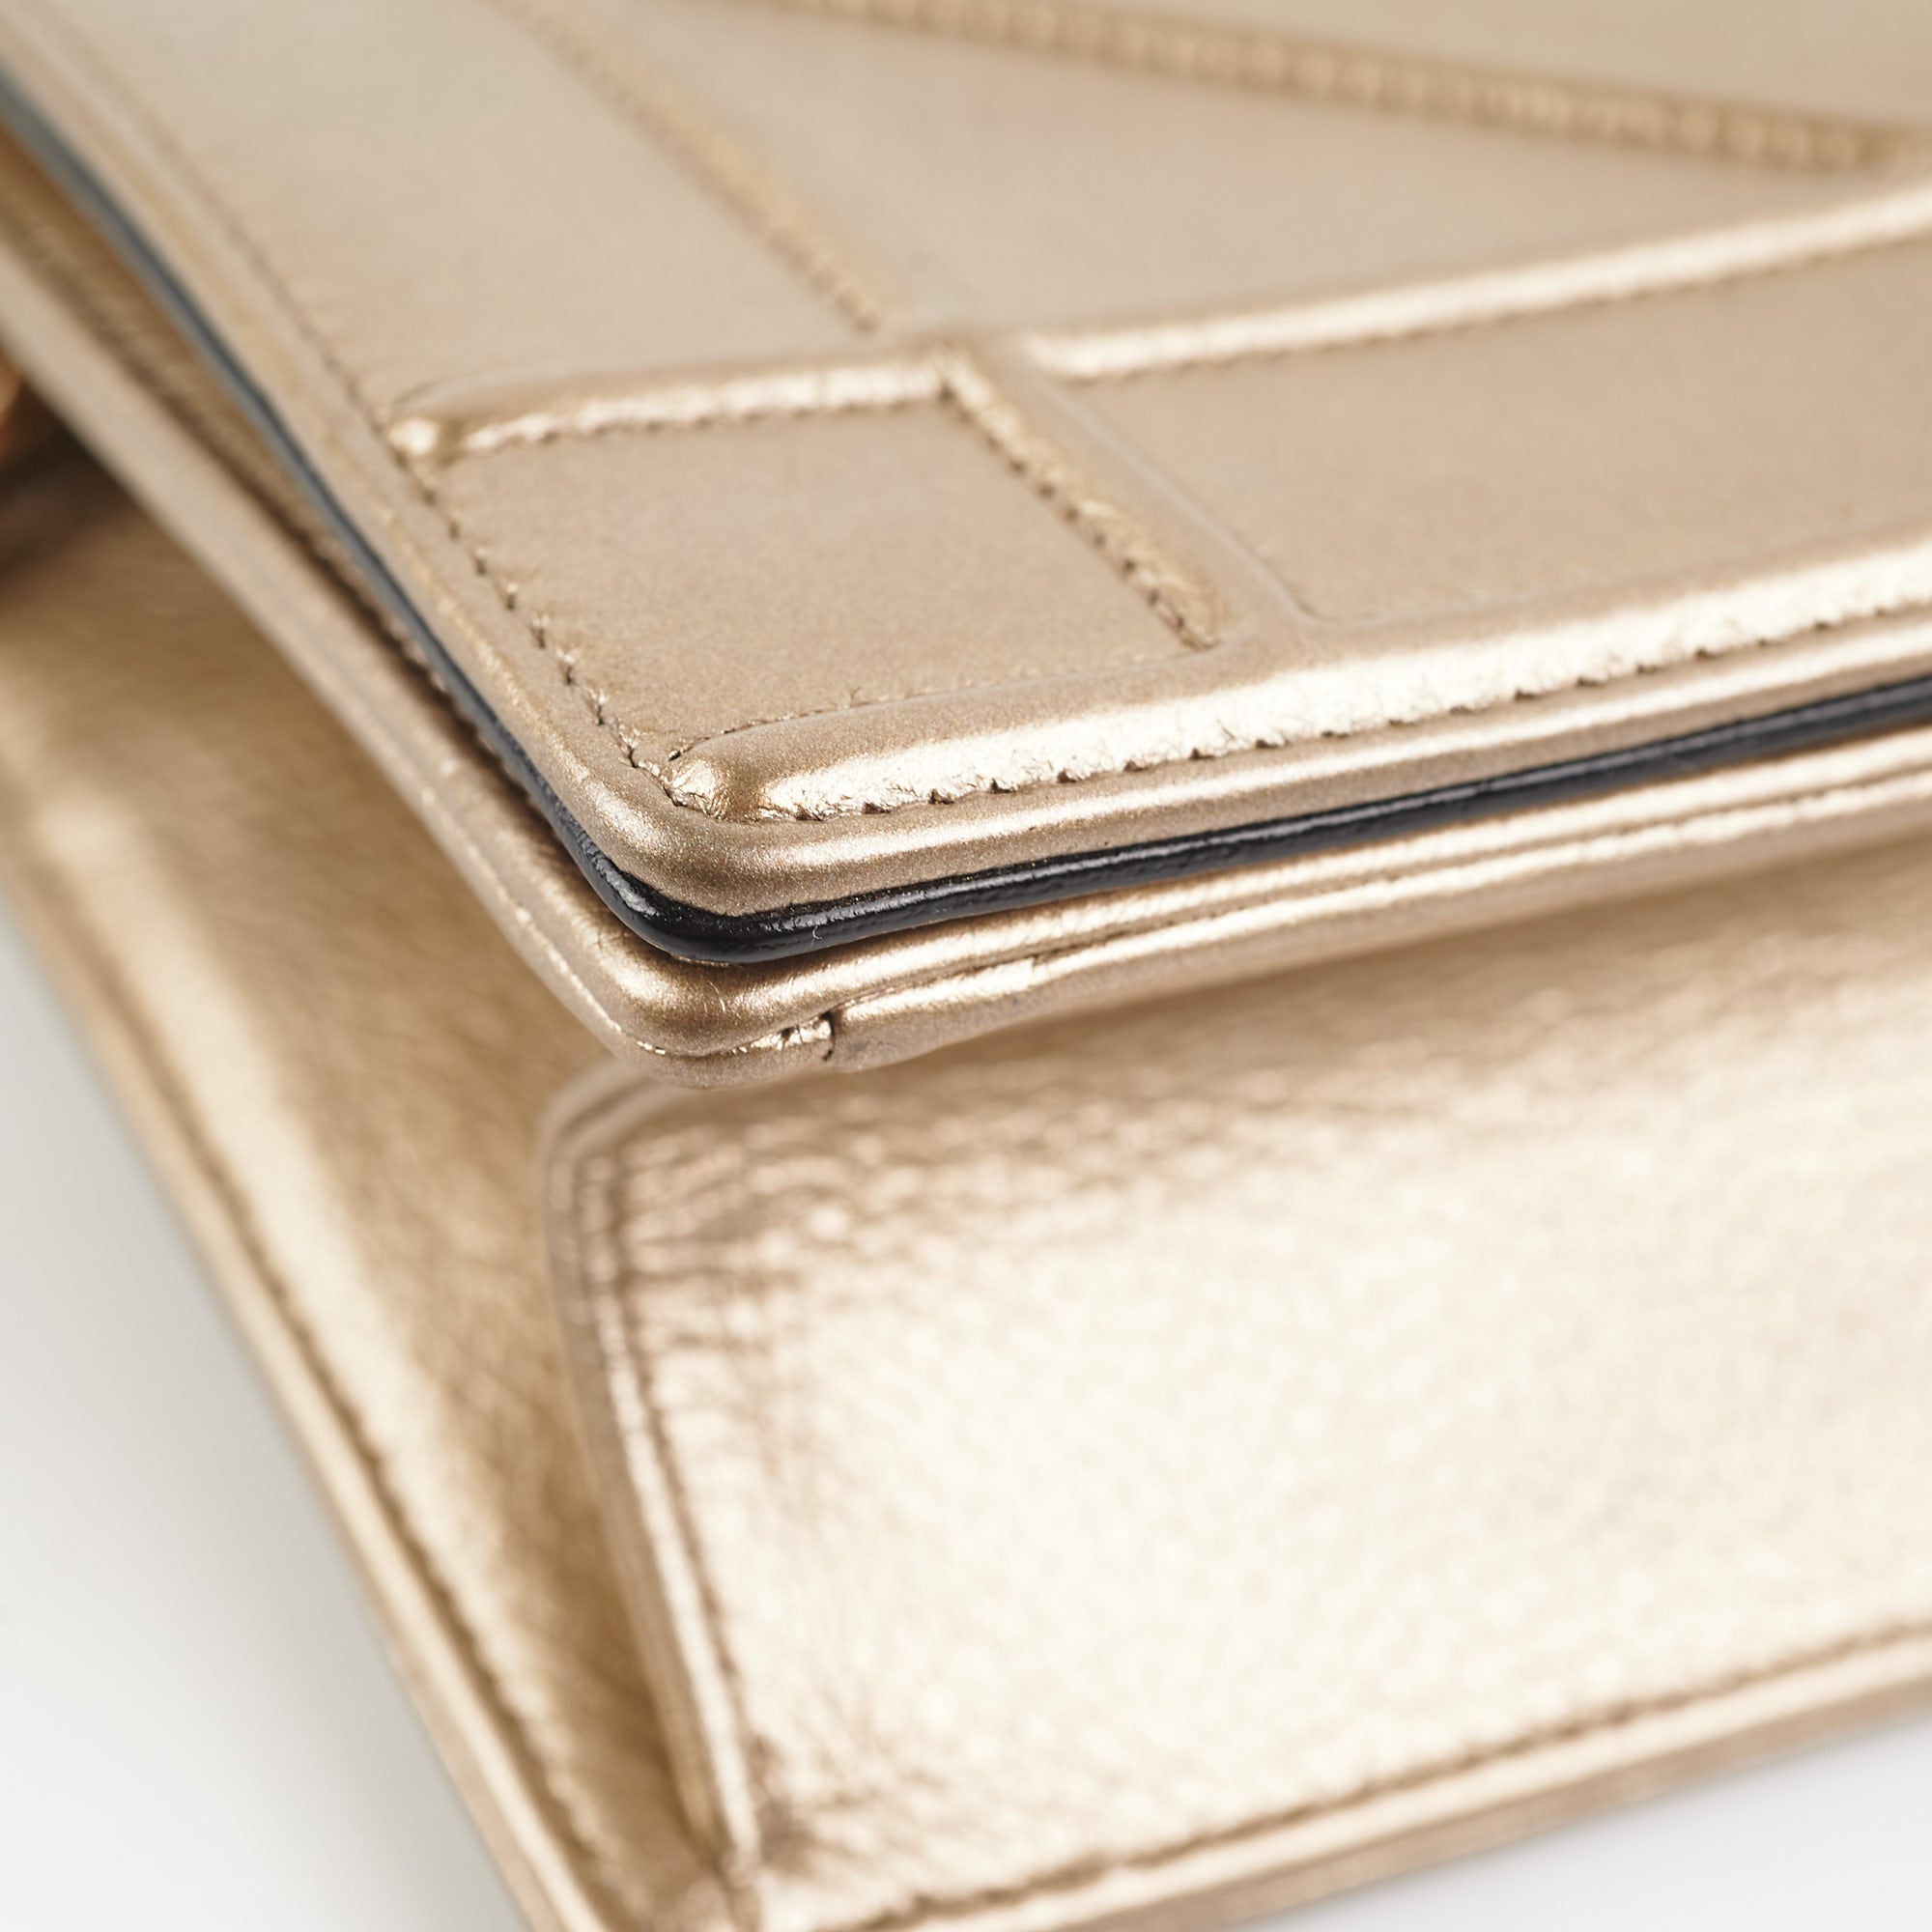 Dior Diorama Gold Small Crossbody Bag - THE PURSE AFFAIR